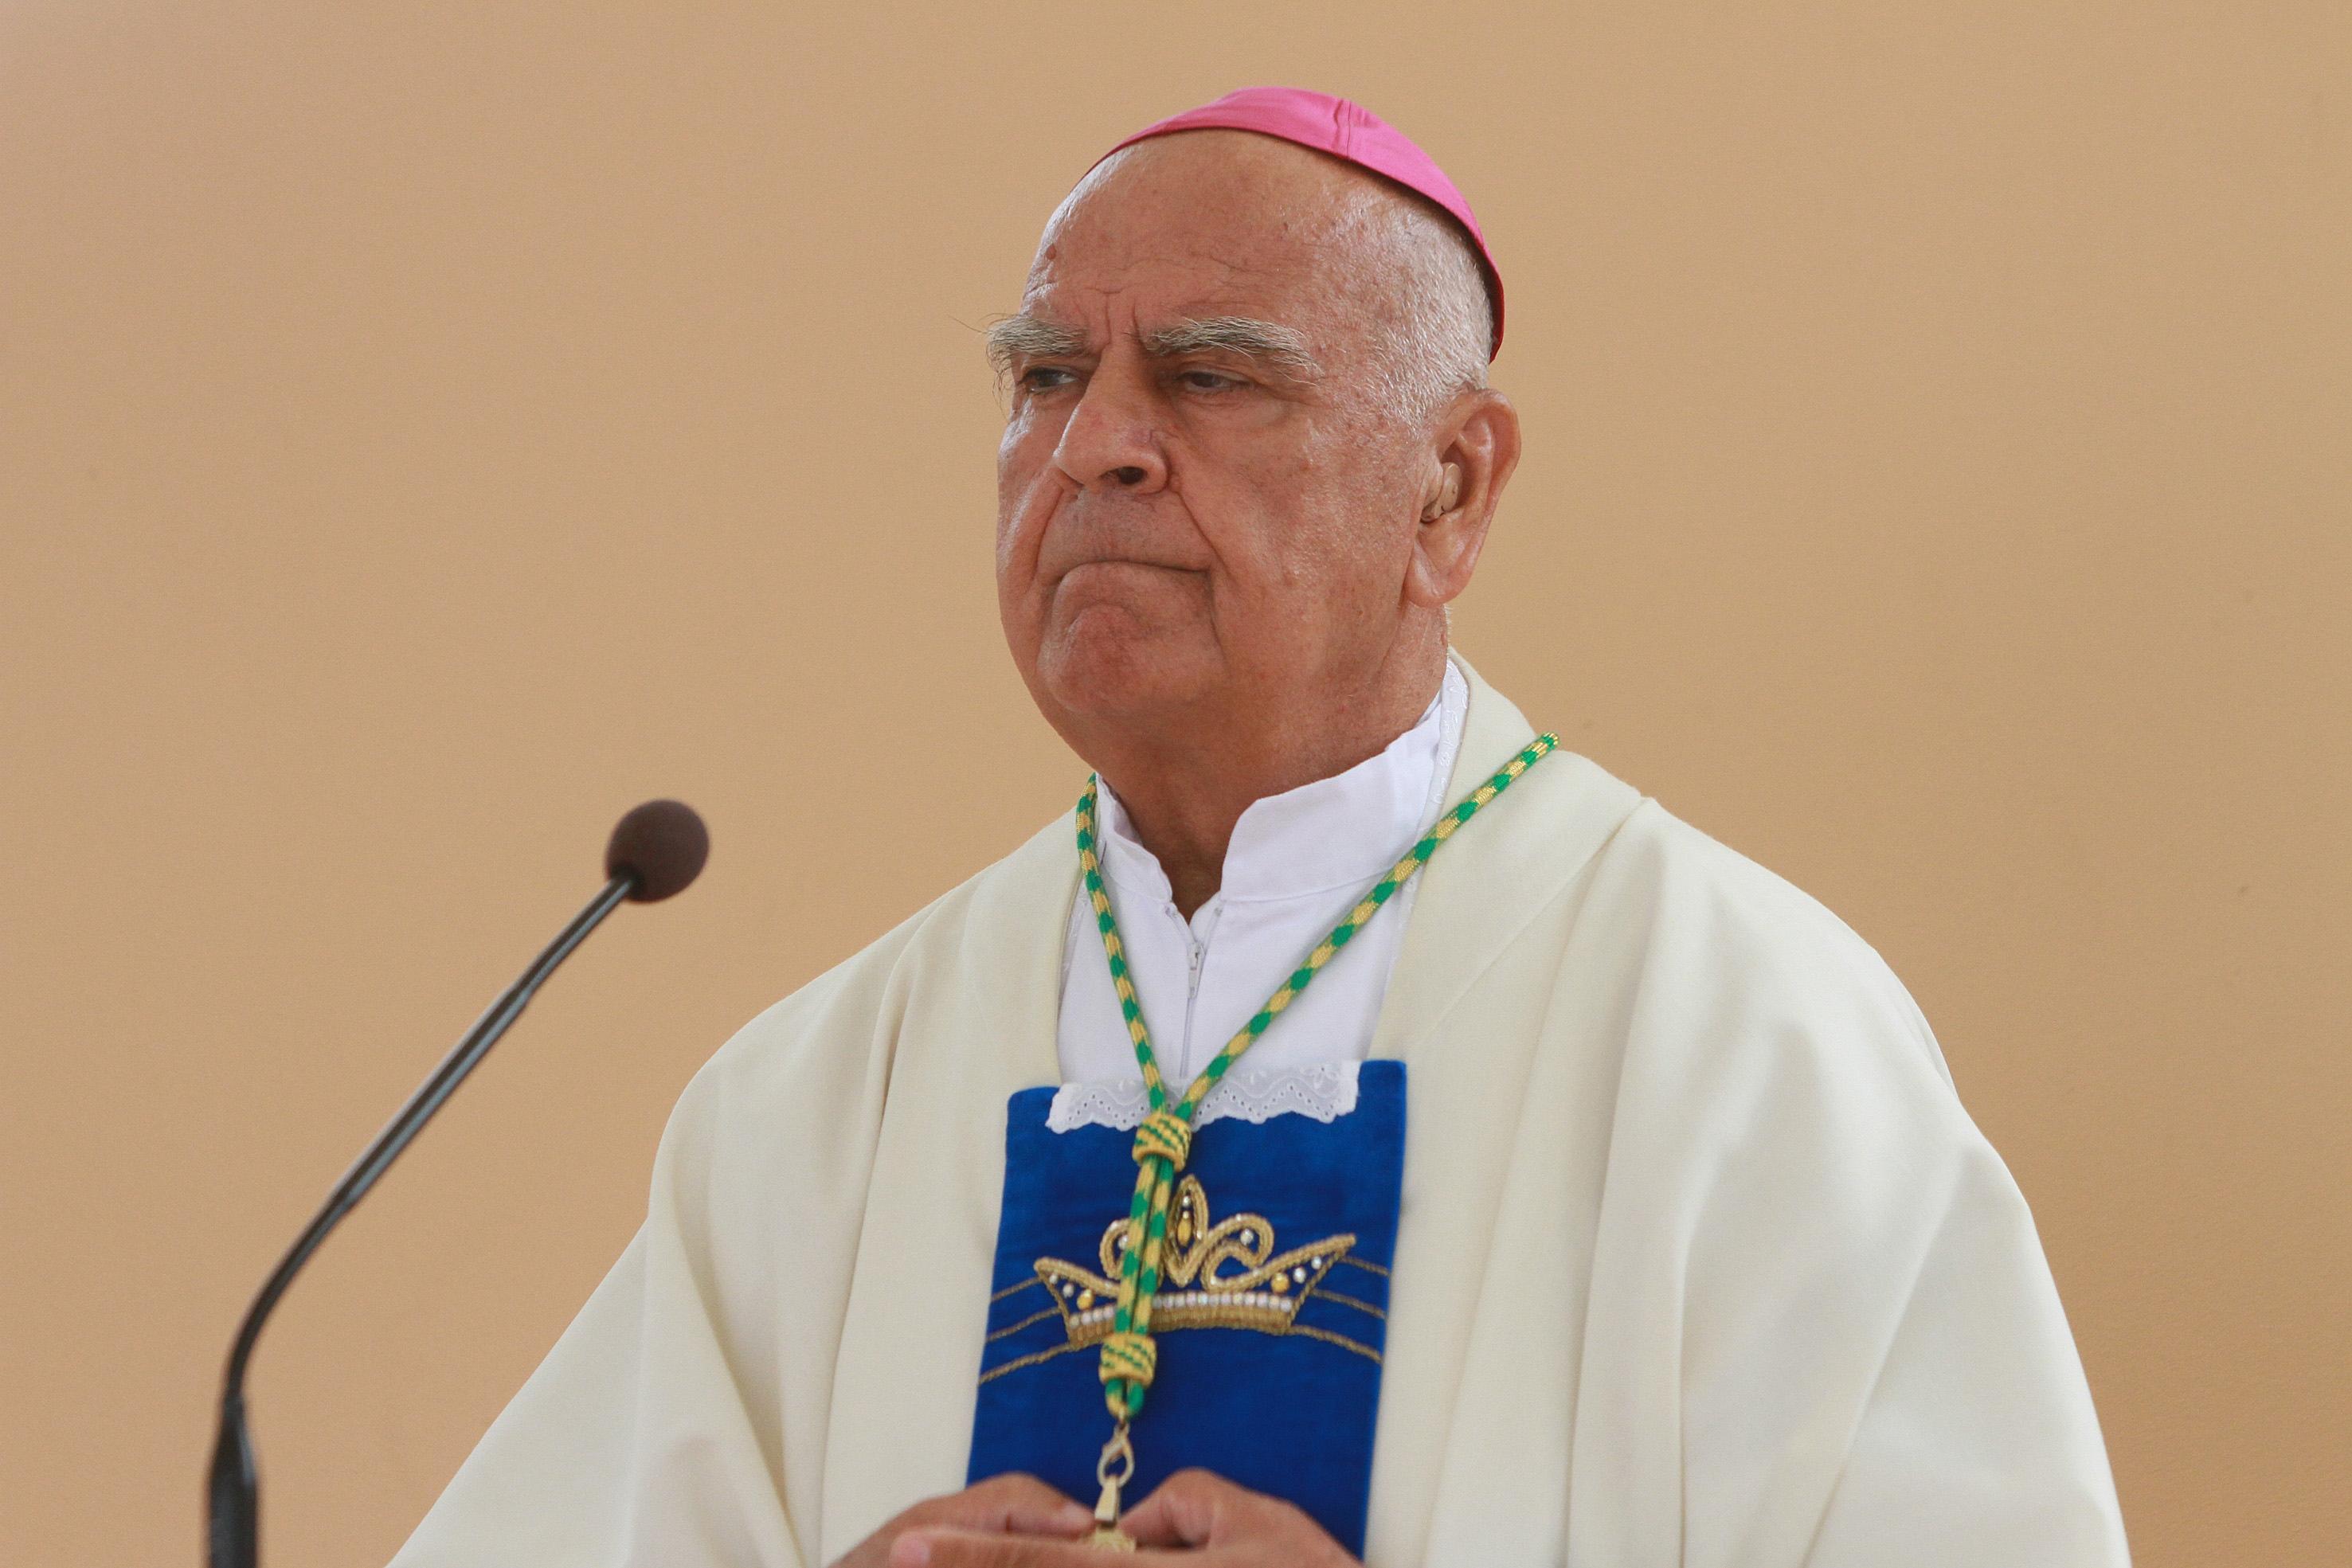 Biskup Perić: I Isus je bio emigrant, ali današnje migracije su političke